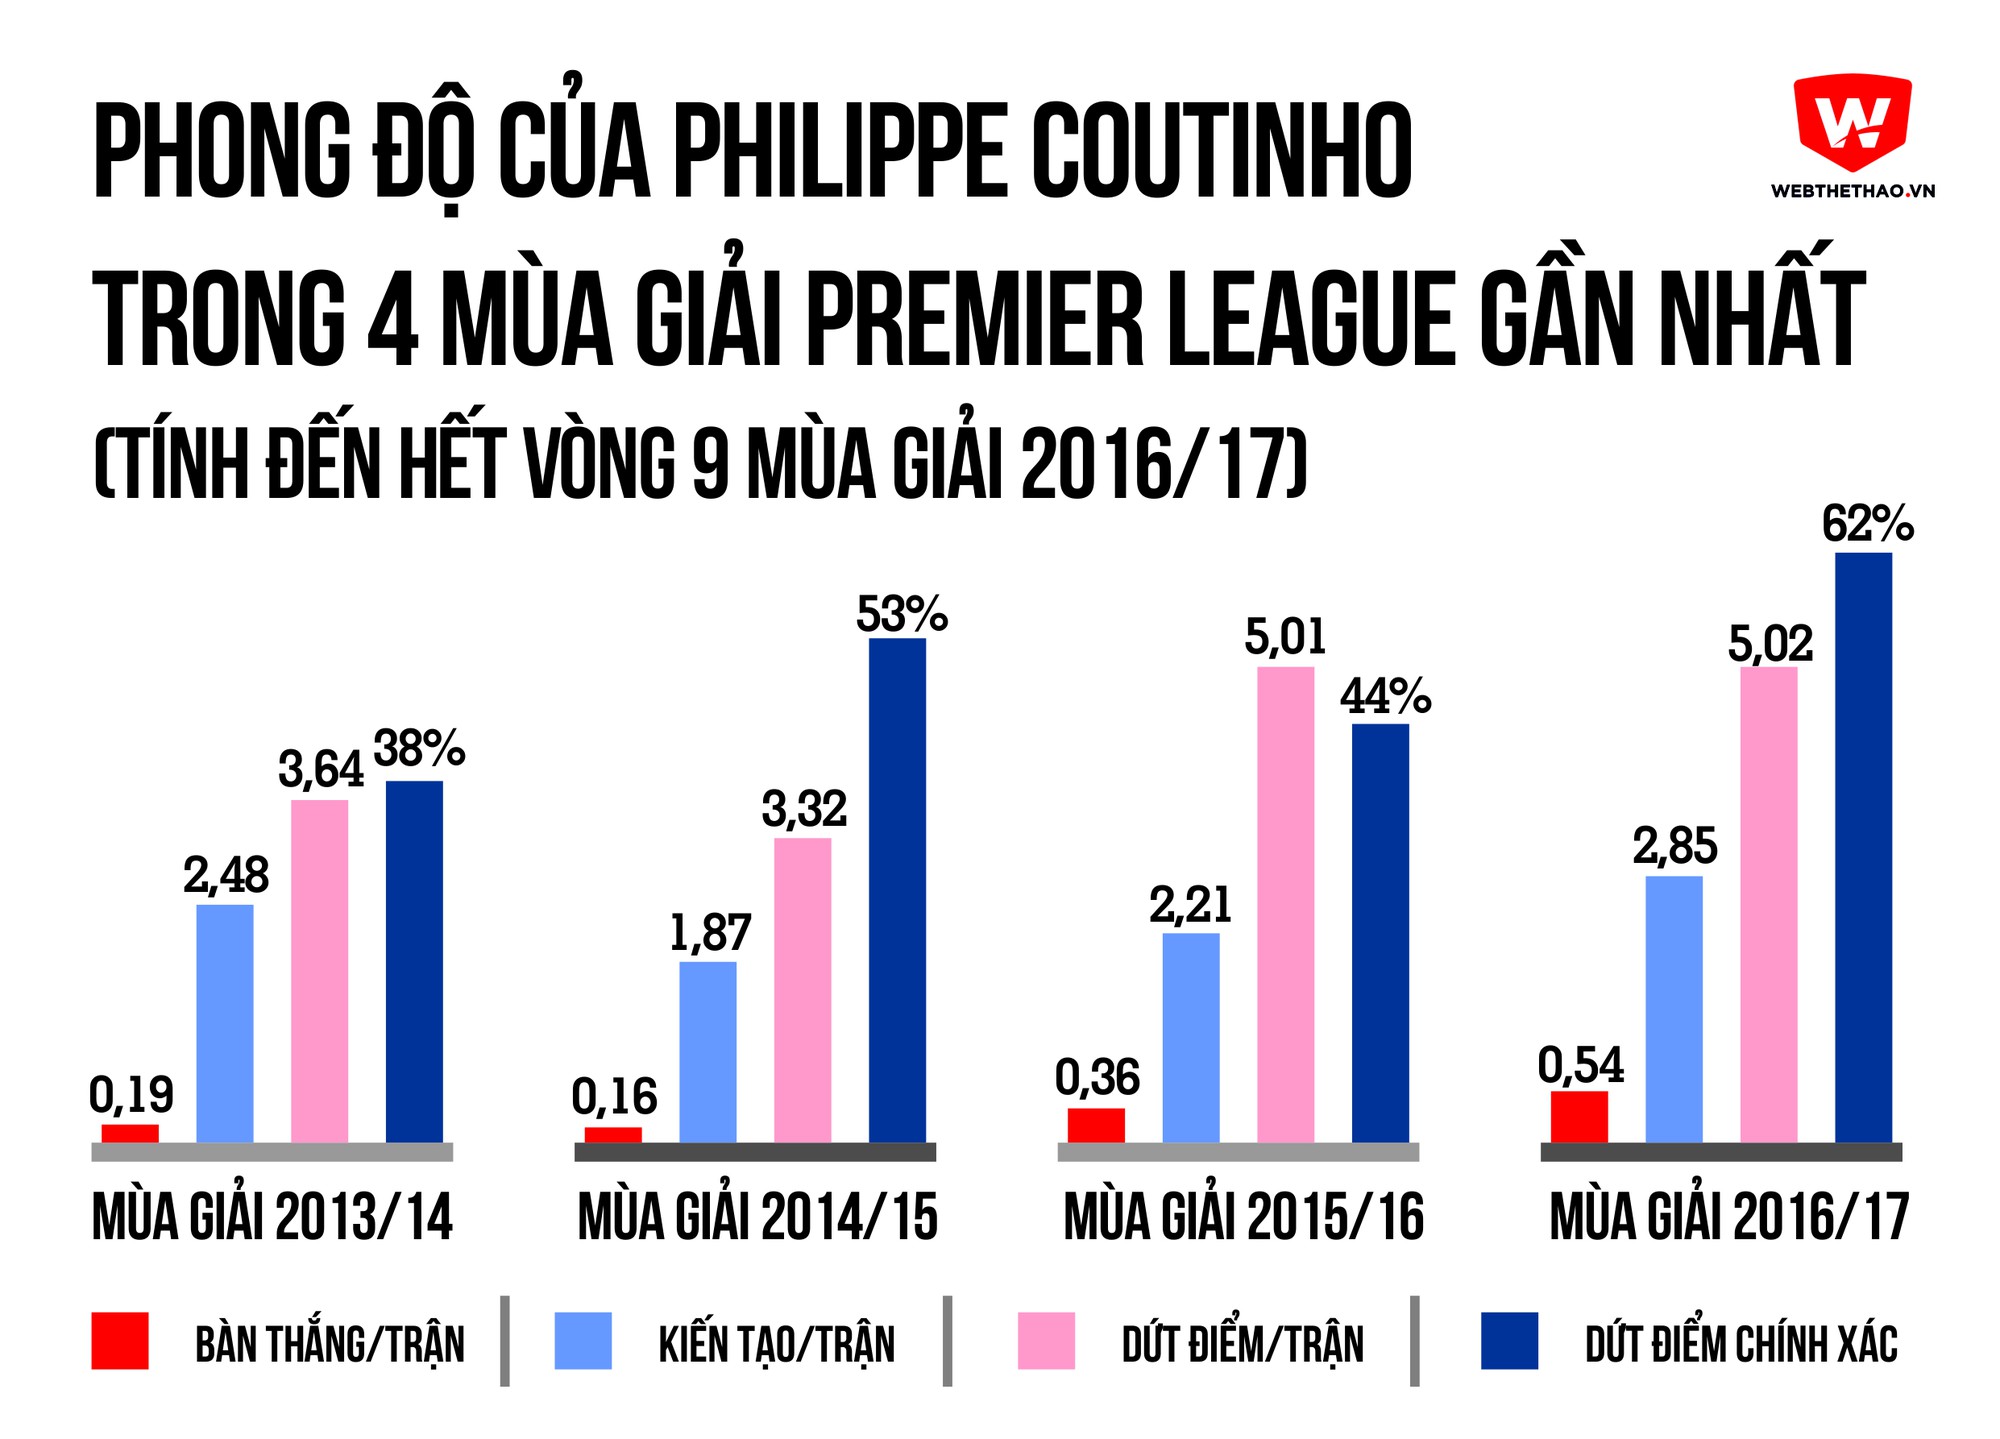 Phong độ của Coutinho ở 4 mùa giải gần nhất.